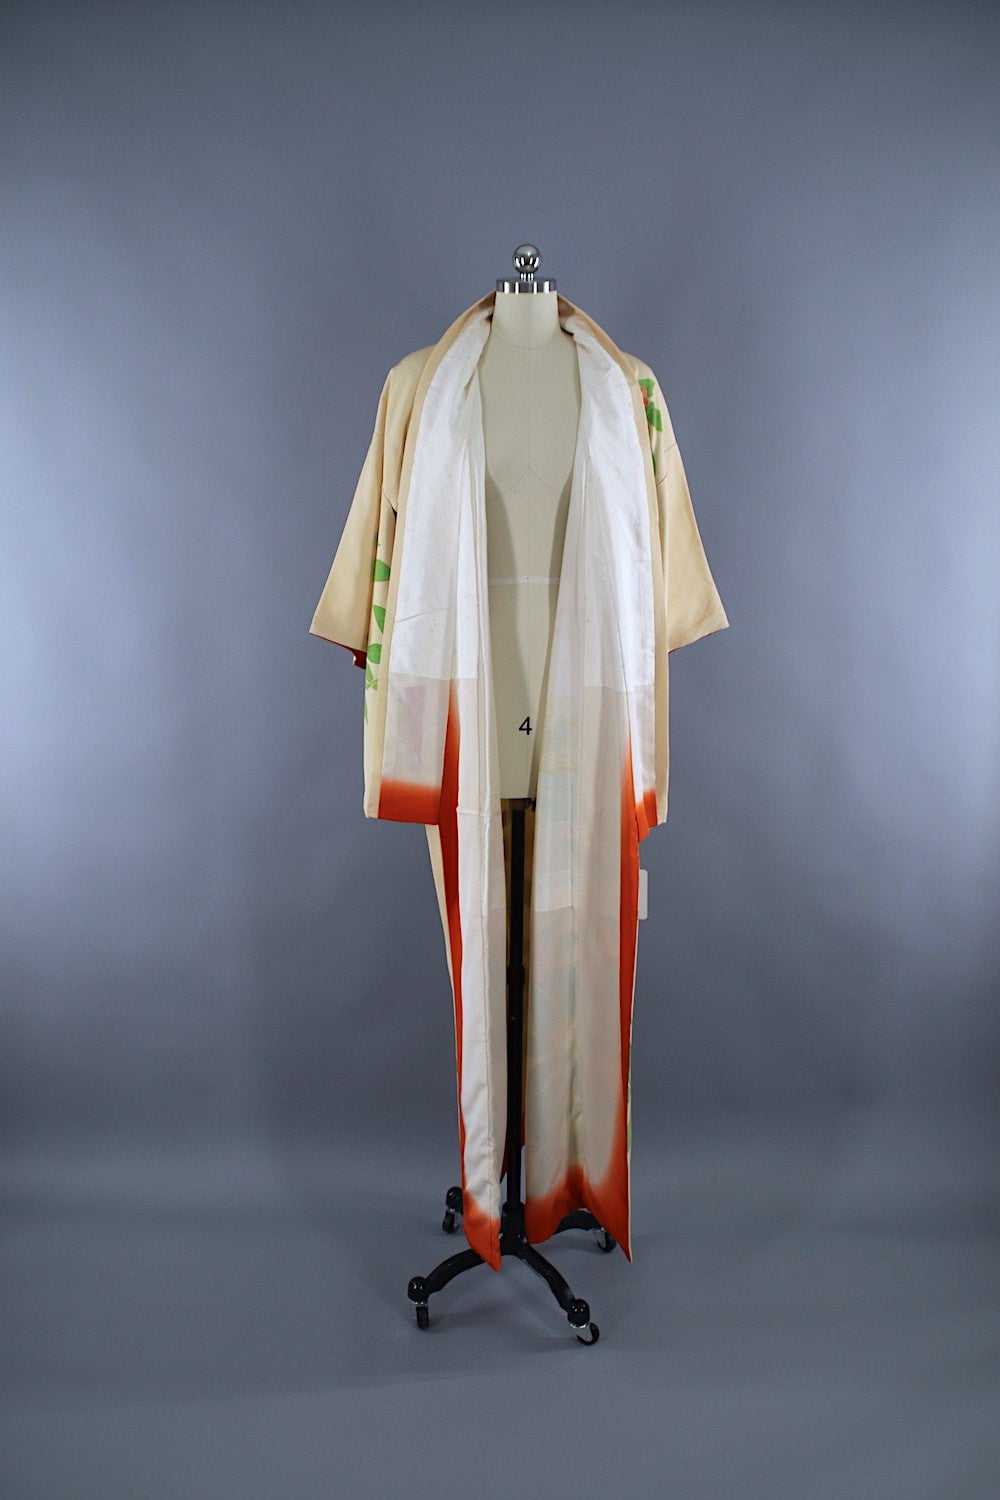 1960s Vintage Silk Kimono Robe / Ivory Pink Floral - ThisBlueBird